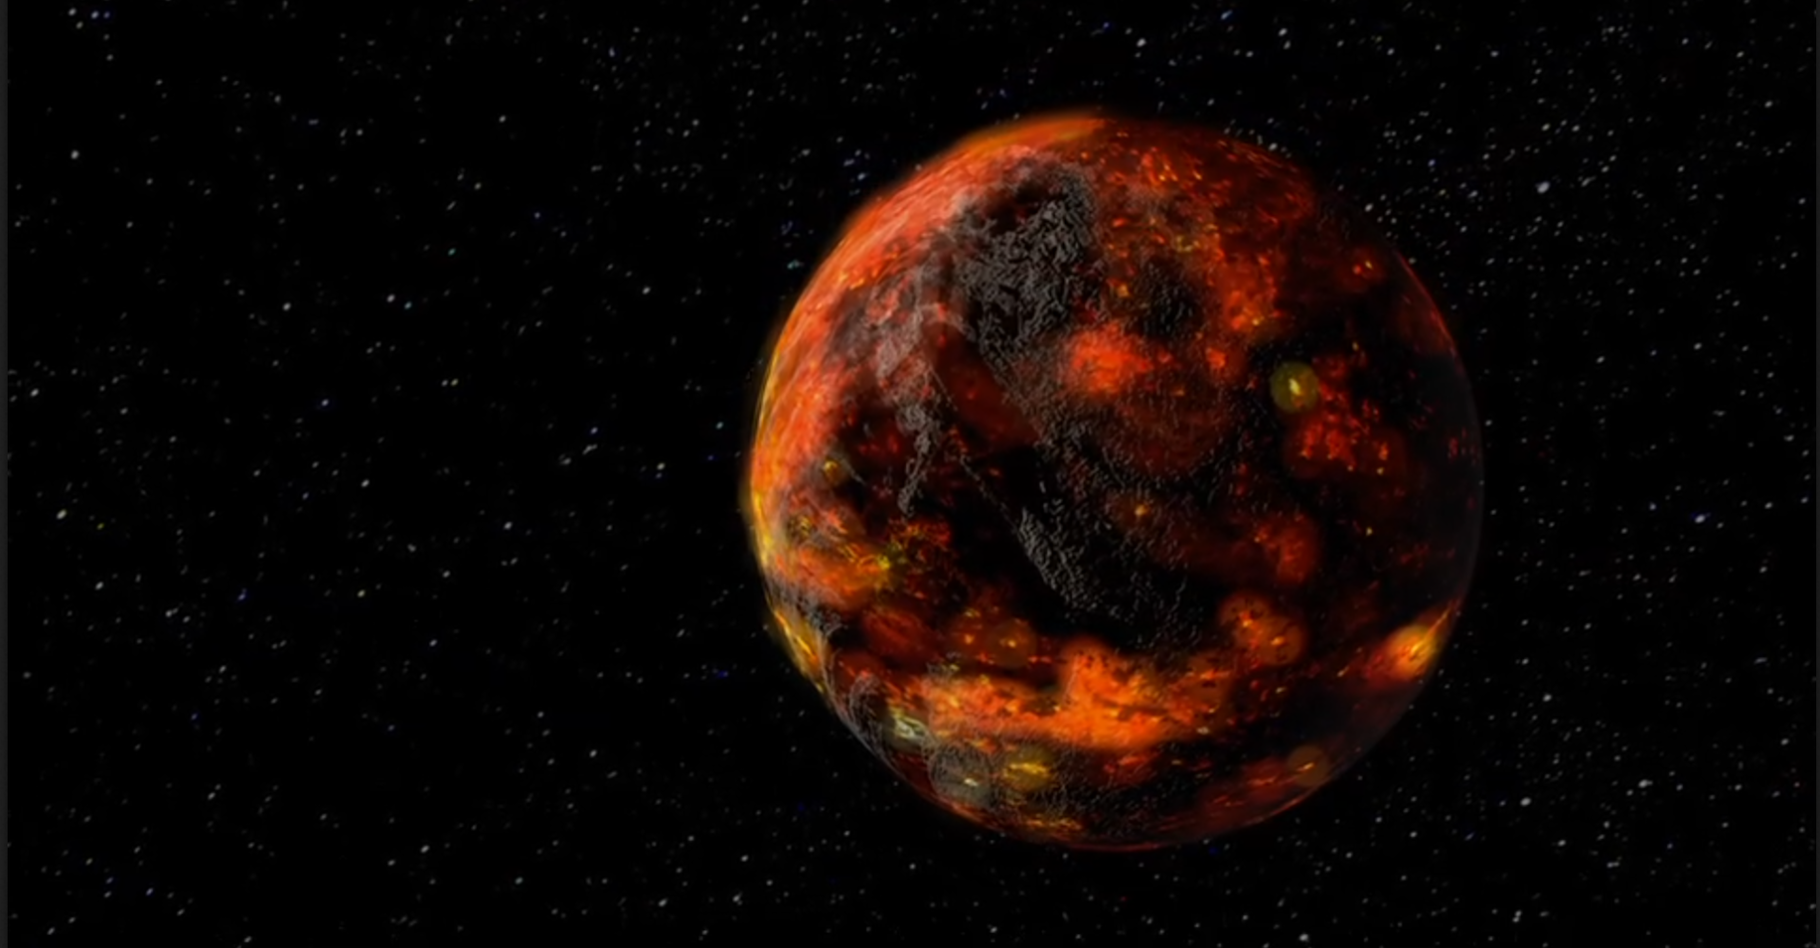 Au moment de sa formation, la Lune a été recouverte d’un océan de magma. Très vite, celui-ci a commencé à se solidifier, formant une croûte de surface. En dessous, le magma a mis près de 200 millions d’années à se solidifier totalement. Une observation qui a permis aux astronomes du Centre allemand pour l’aéronautique et l’astronautique (DLR) de déterminer l’âge de la Lune : environ 4,425 milliards d’années. © Goddard Space Flight Center, Nasa